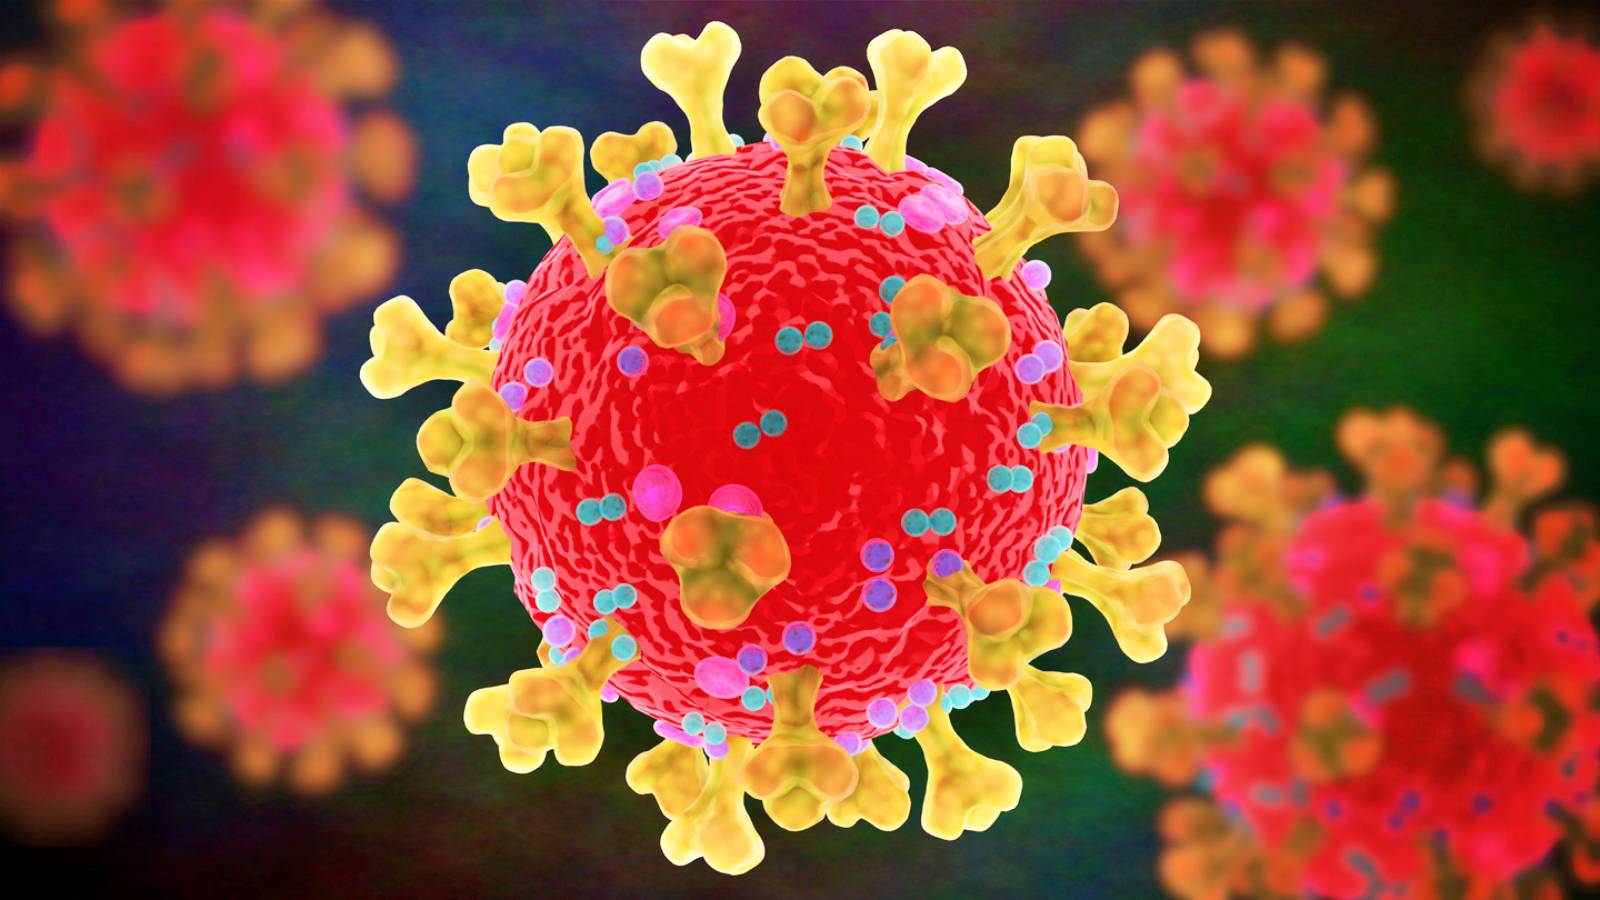 Koronavirus Romaniassa uusien tapausten määrä lisääntyi 1